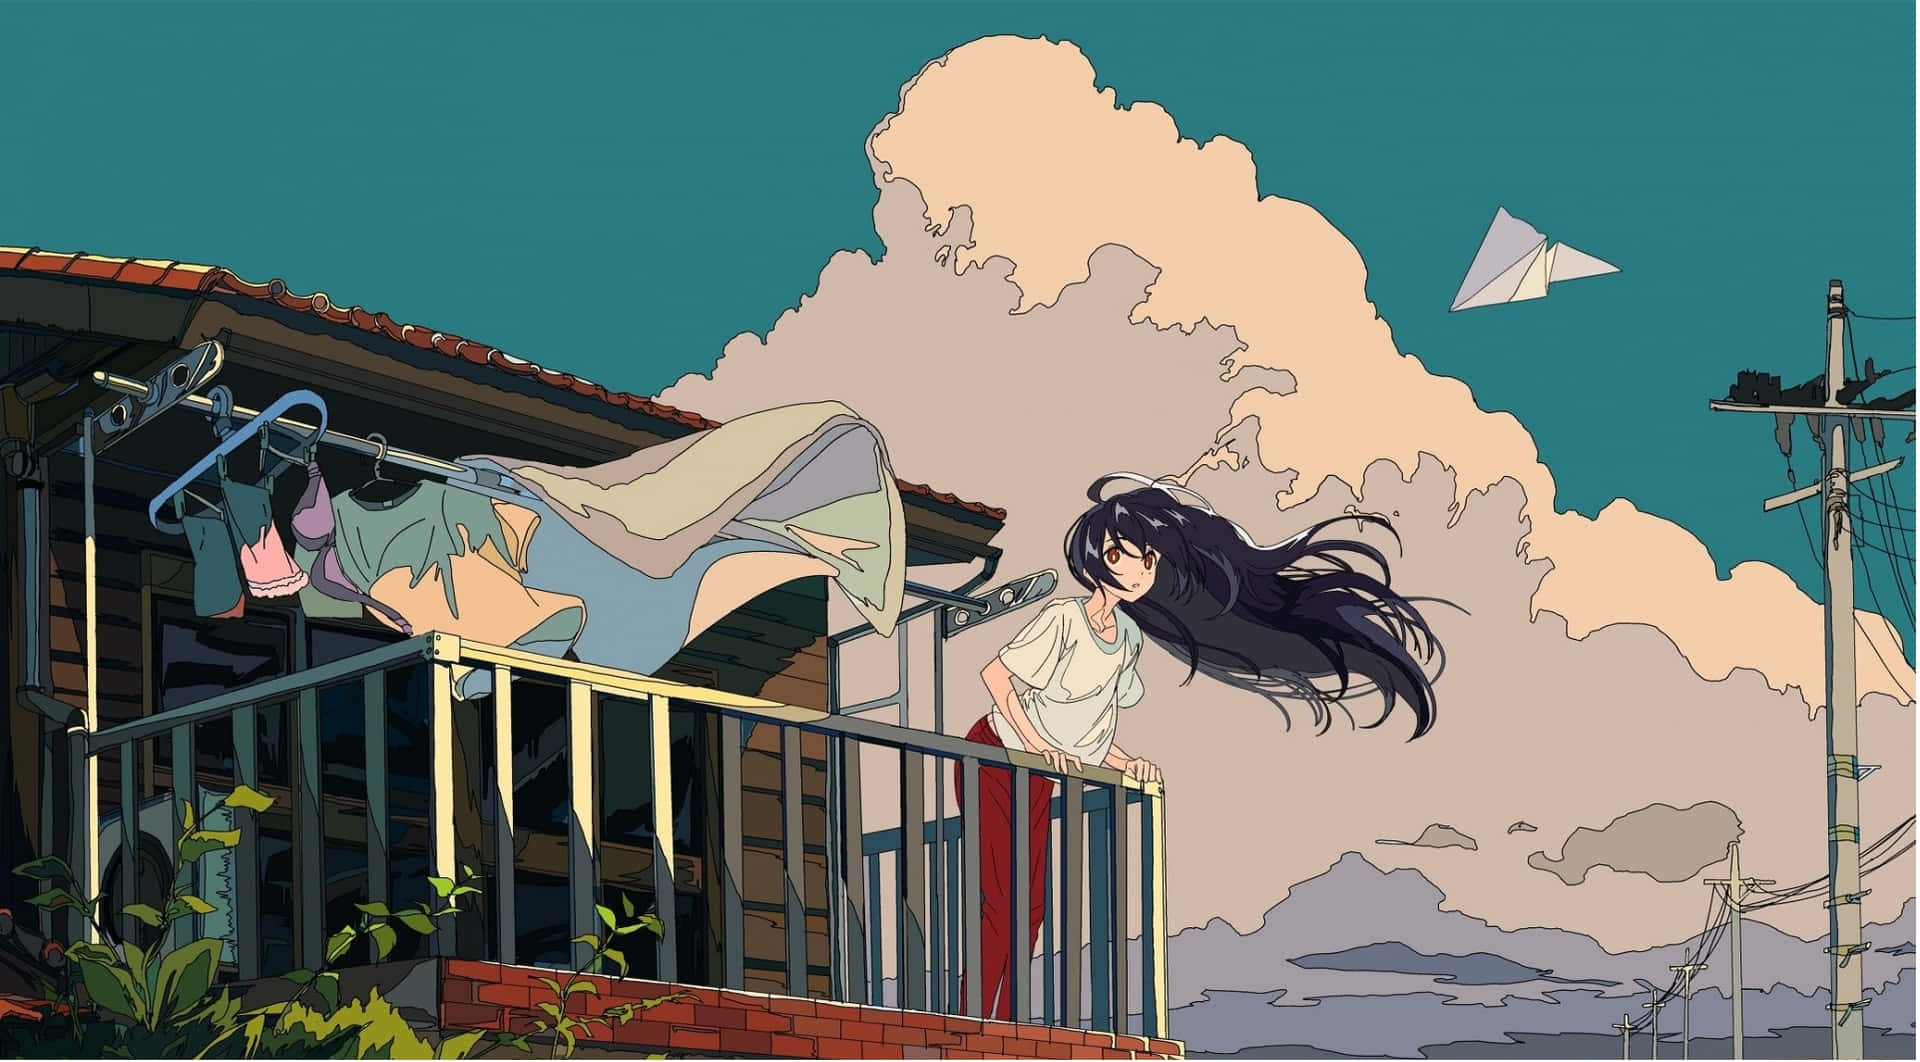 Enlekfull Anime-estetisk Tapet Med Två Karaktärer I En Livlig Solnedgång.